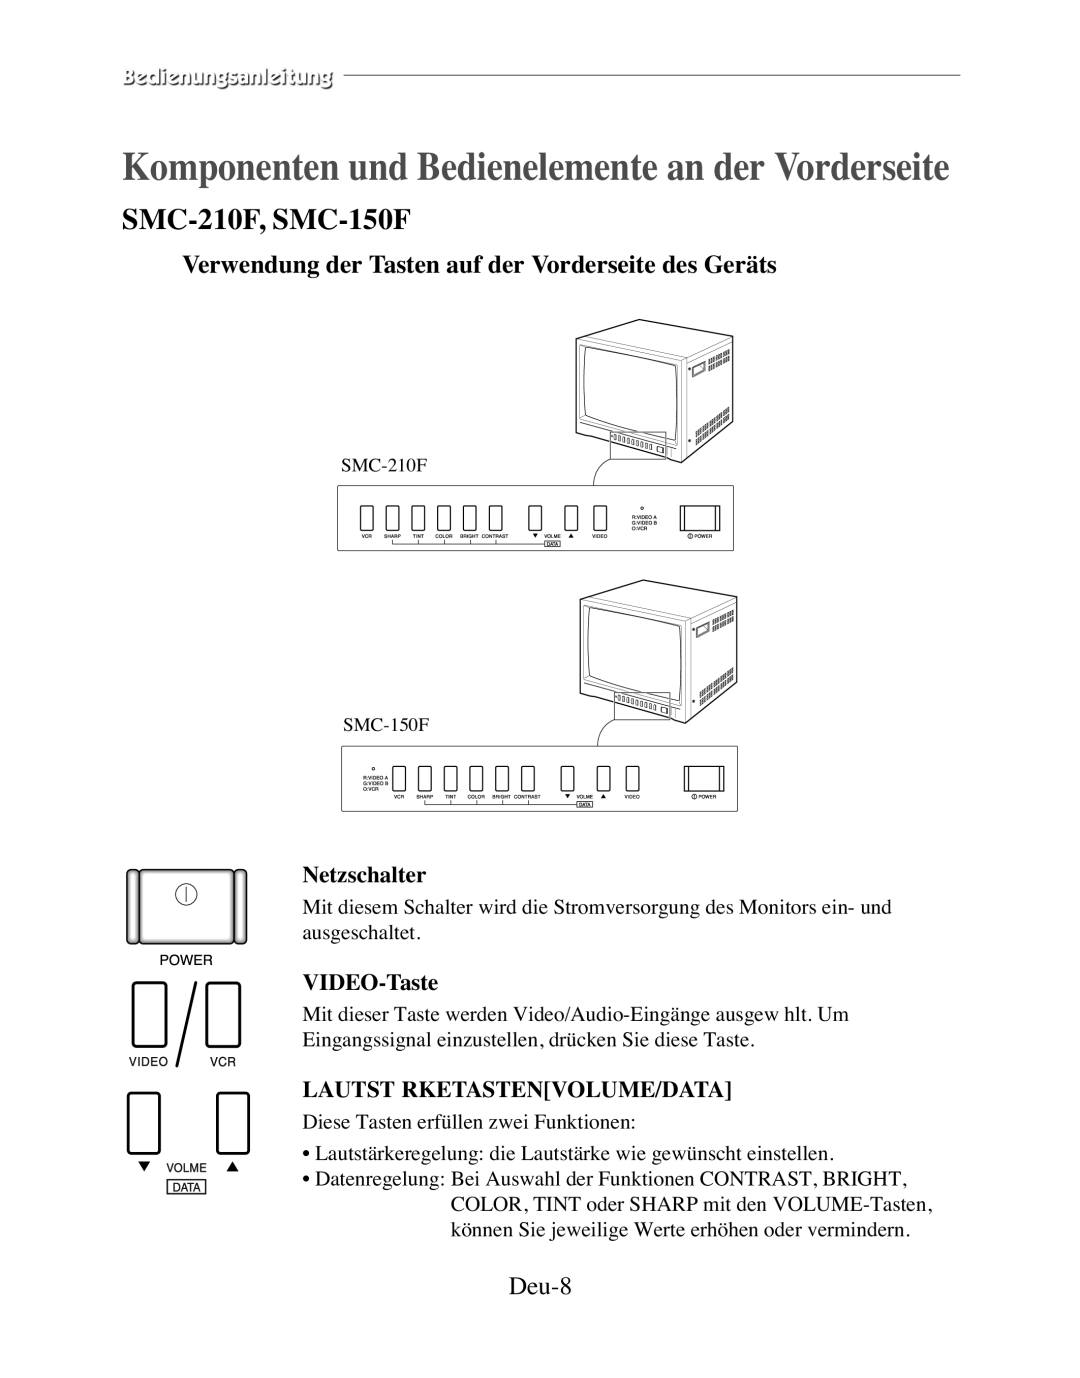 Samsung SMC-152FP Komponenten und Bedienelemente an der Vorderseite, SMC-210F, SMC-150F, Deu-8, Netzschalter, VIDEO-Taste 